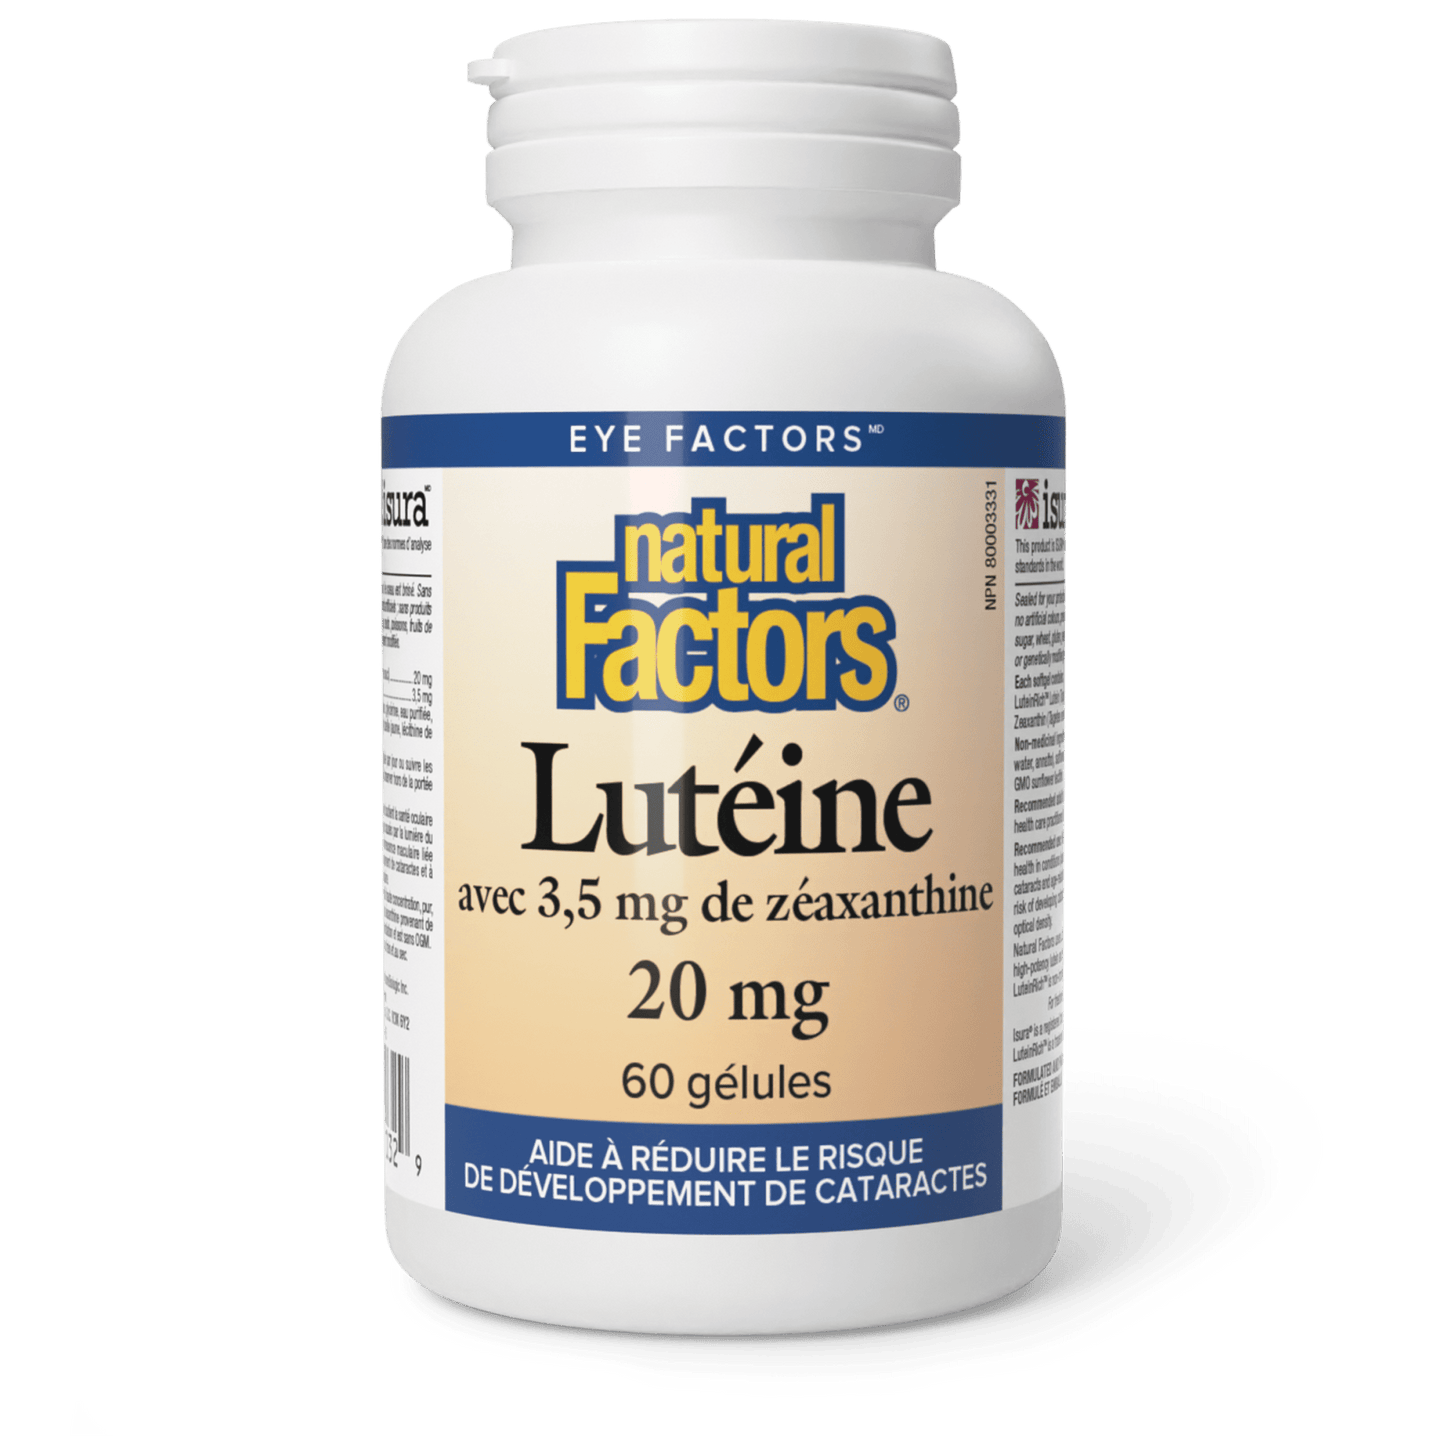 Lutéine 20 mg, Natural Factors|v|image|1032